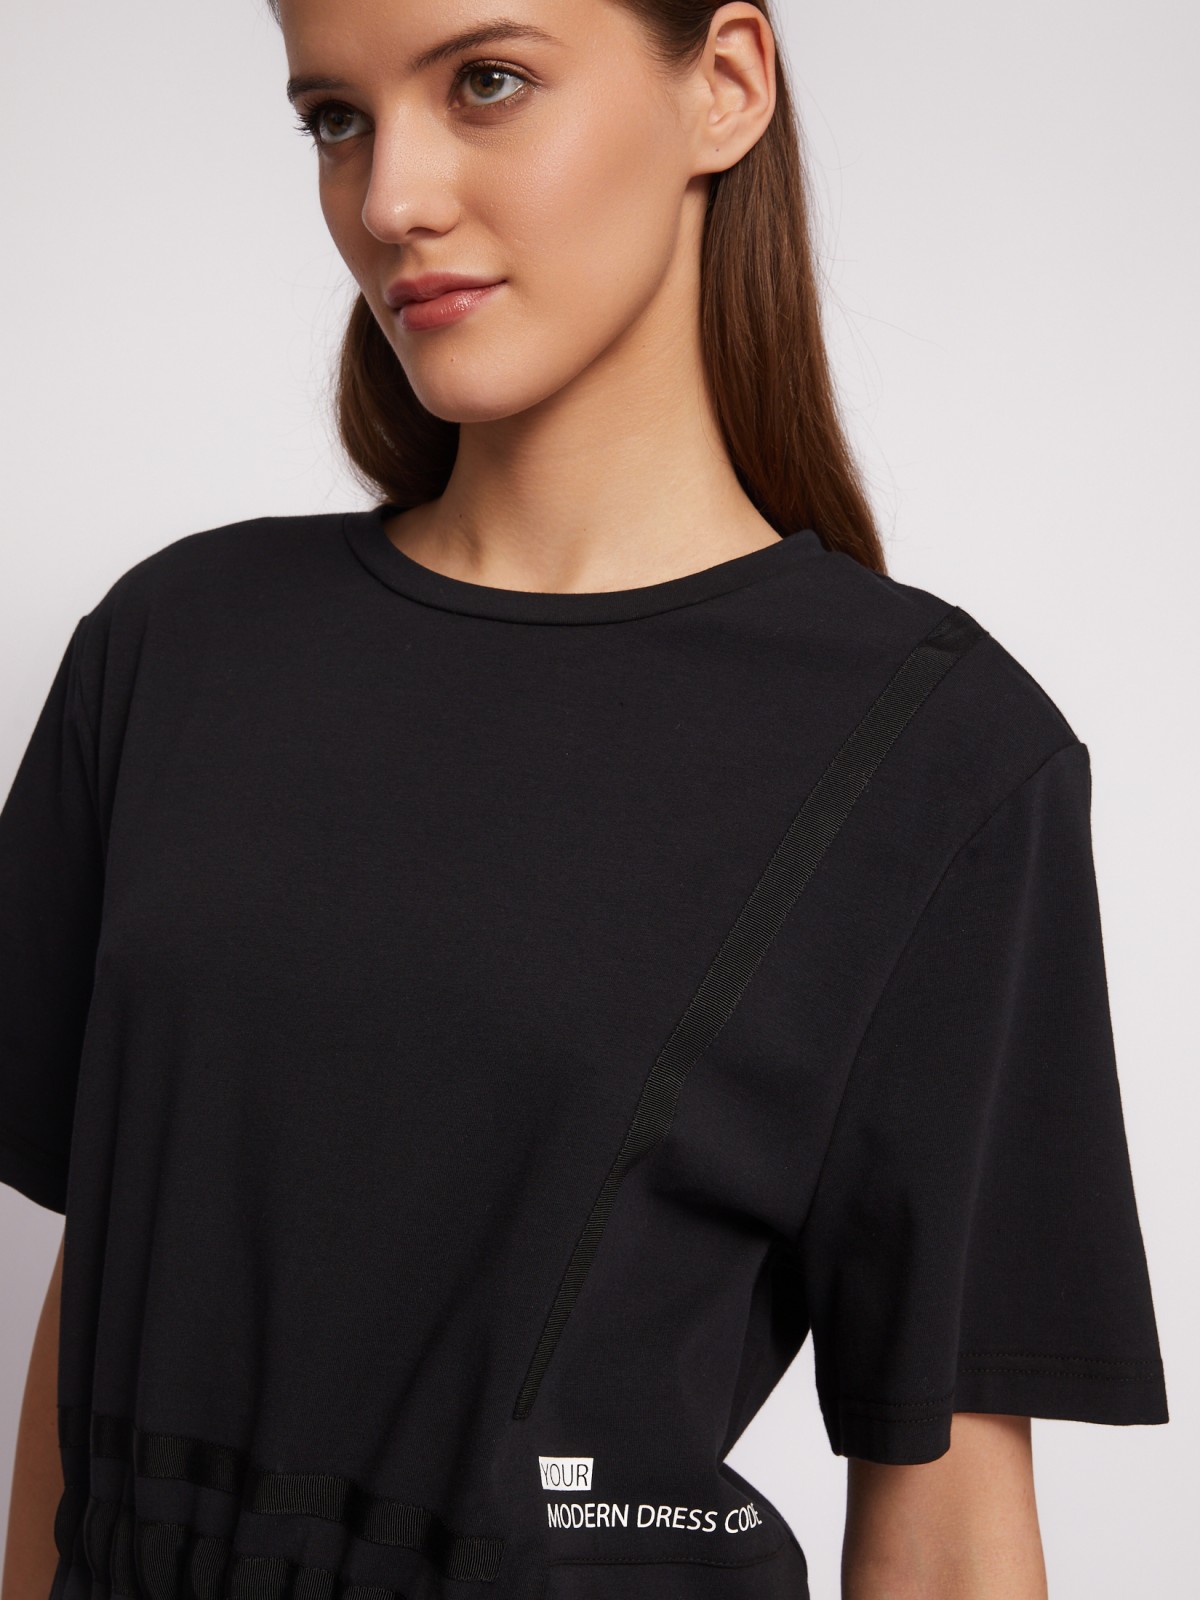 Платье-футболка из хлопка с завязками на талии zolla 024218139021, цвет черный, размер S - фото 3